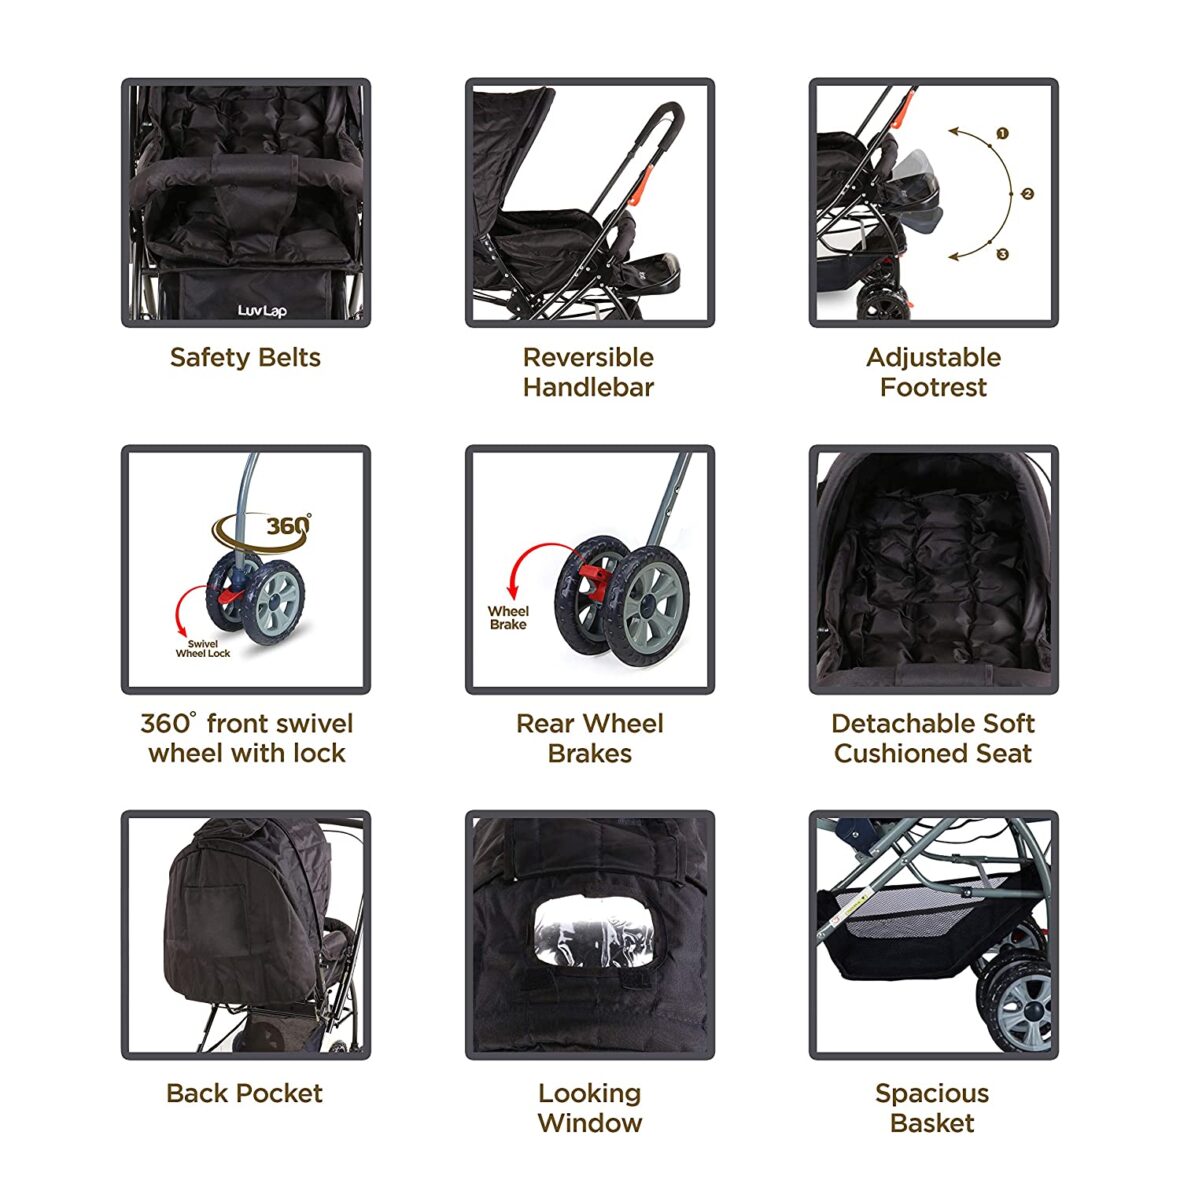 LuvLap Starshine Stroller/Pram, Easy Fold for Newborn Baby/Kids, 0-3 Years Multicolor